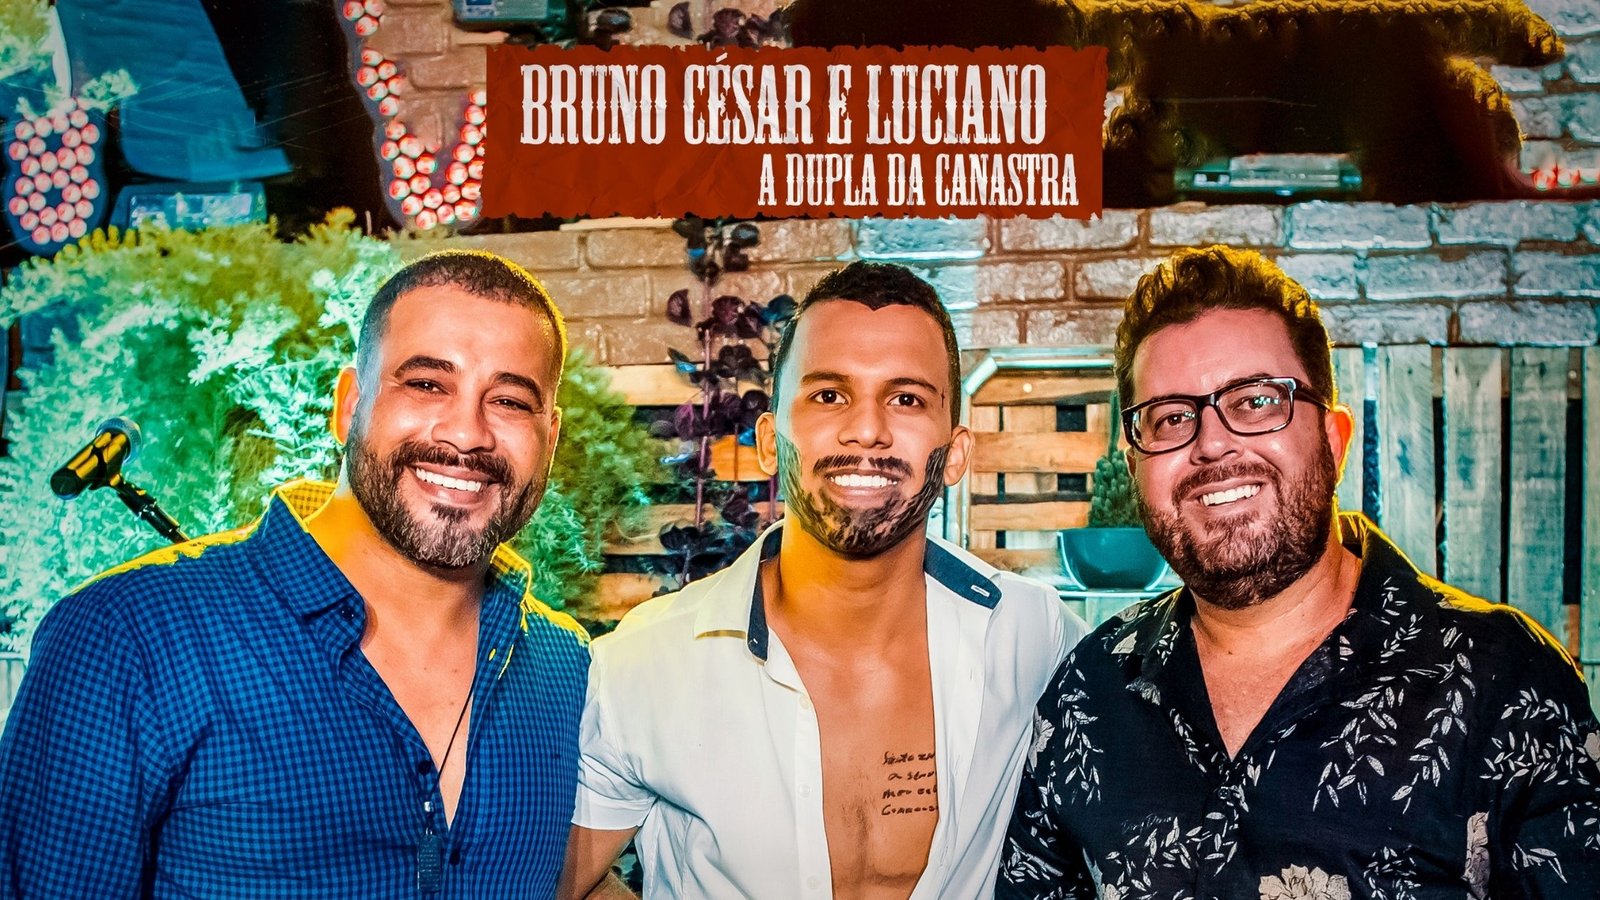 Cópia Falsificada: está no ar a nova música de Bruno César & Luciano – Lançamento